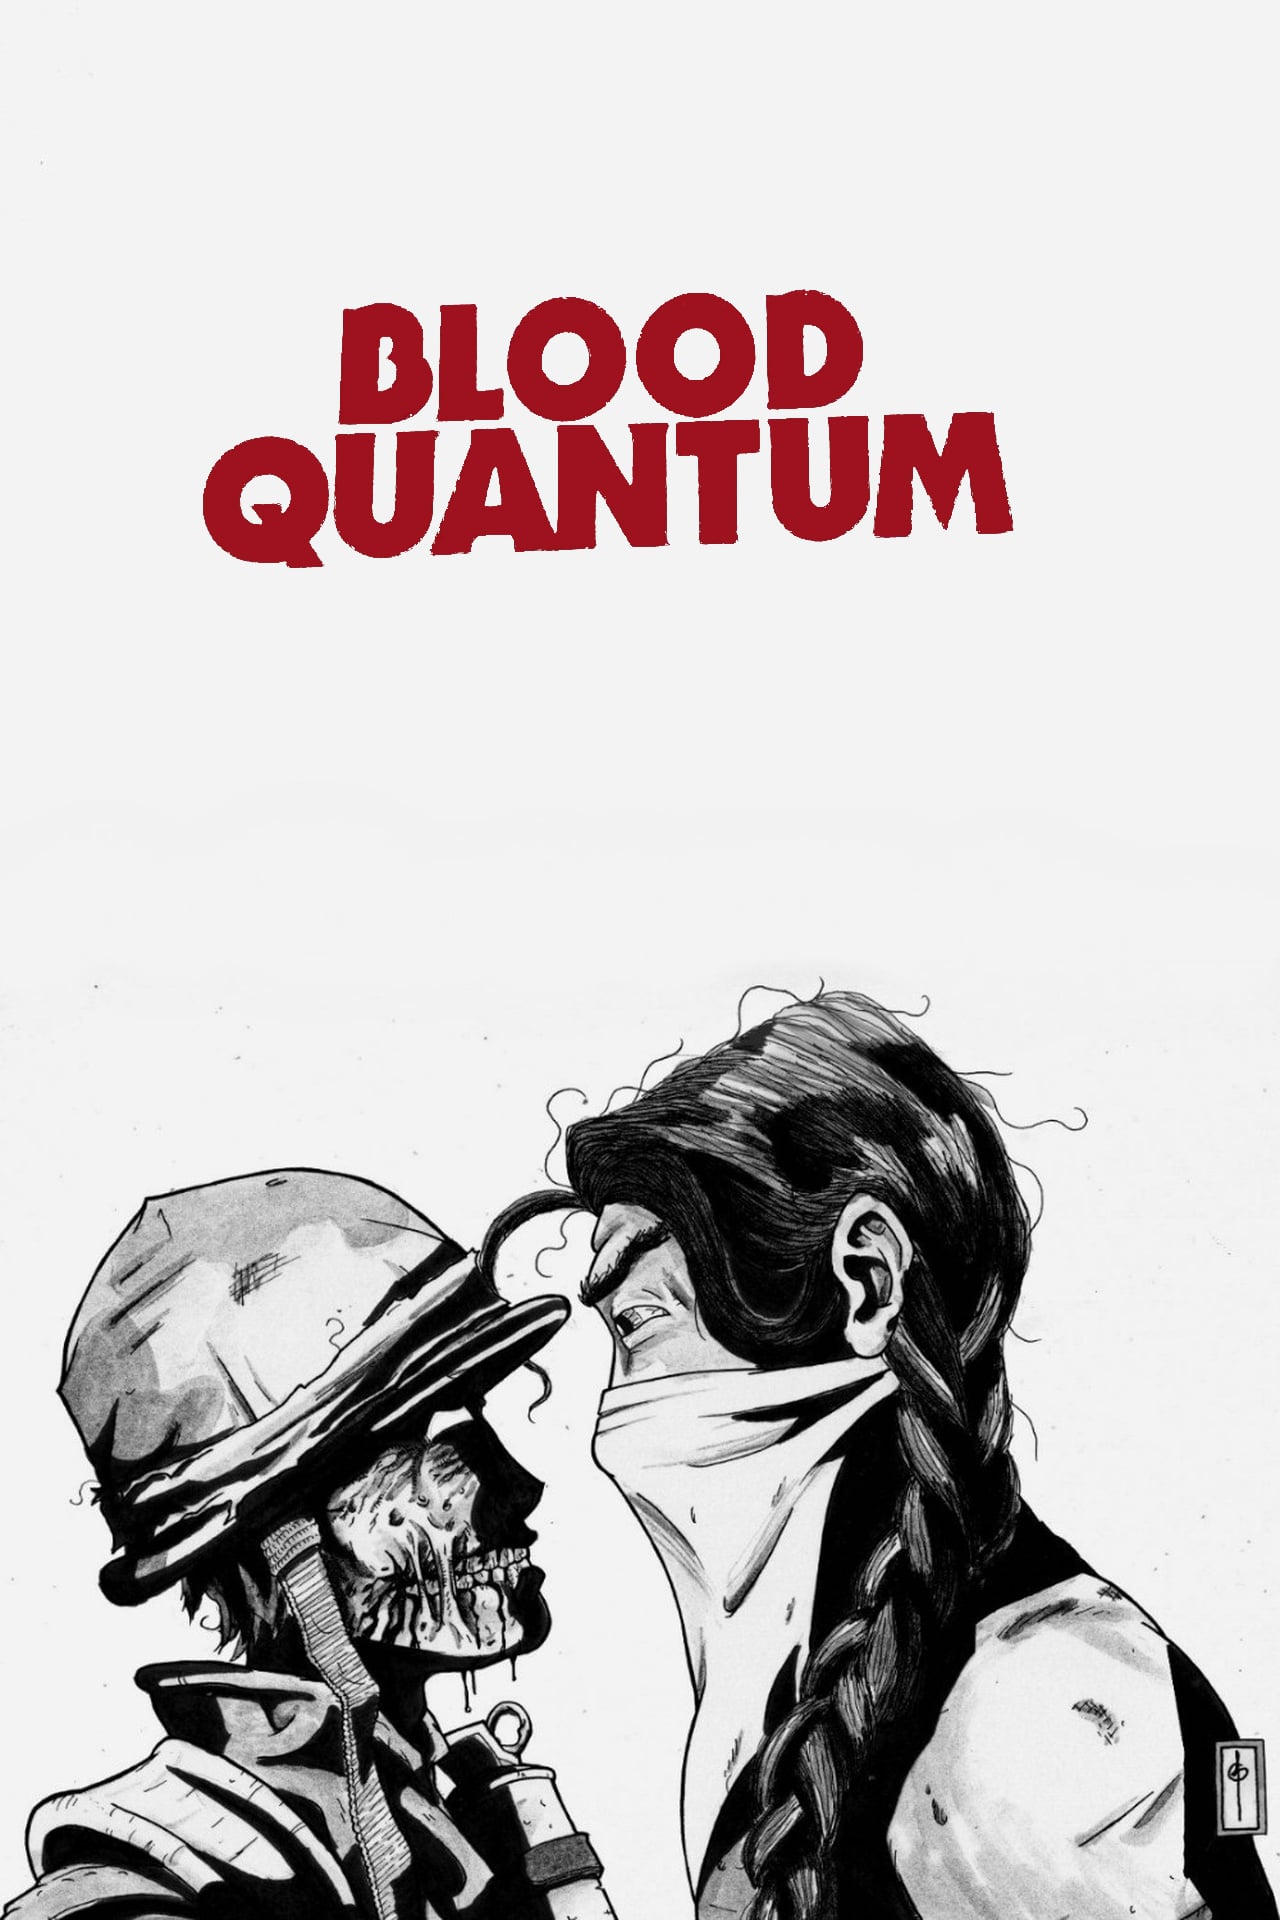 Blood Quantum 5 de Setembro de 2019 Filmow